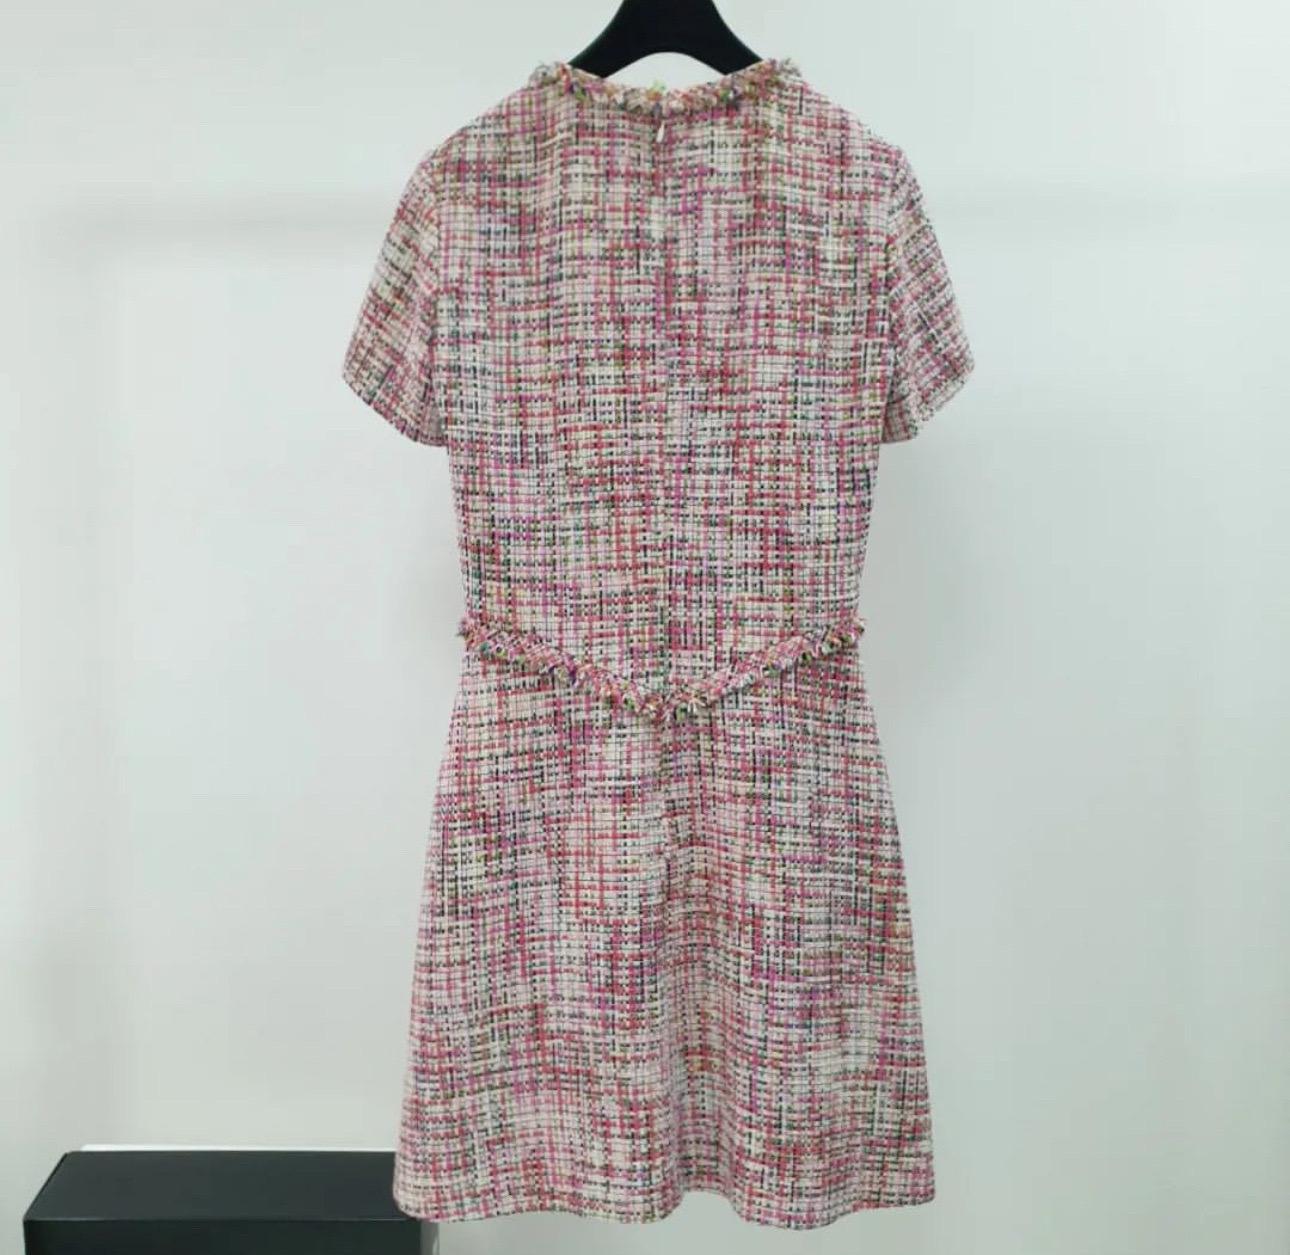 CHANEL 17P NWT $9.150
HARD TO FIND TWEED FRINGED DRESS Sz. 38 

Diese Auktion ist für Chanel selten zu finden Tweed-Kleid aus Chanel 2017 Frühling Kollektion. Sie ist mit 2 Seitentaschen und dem ineinandergreifenden CC-Logo von Chanel versehen. Dies